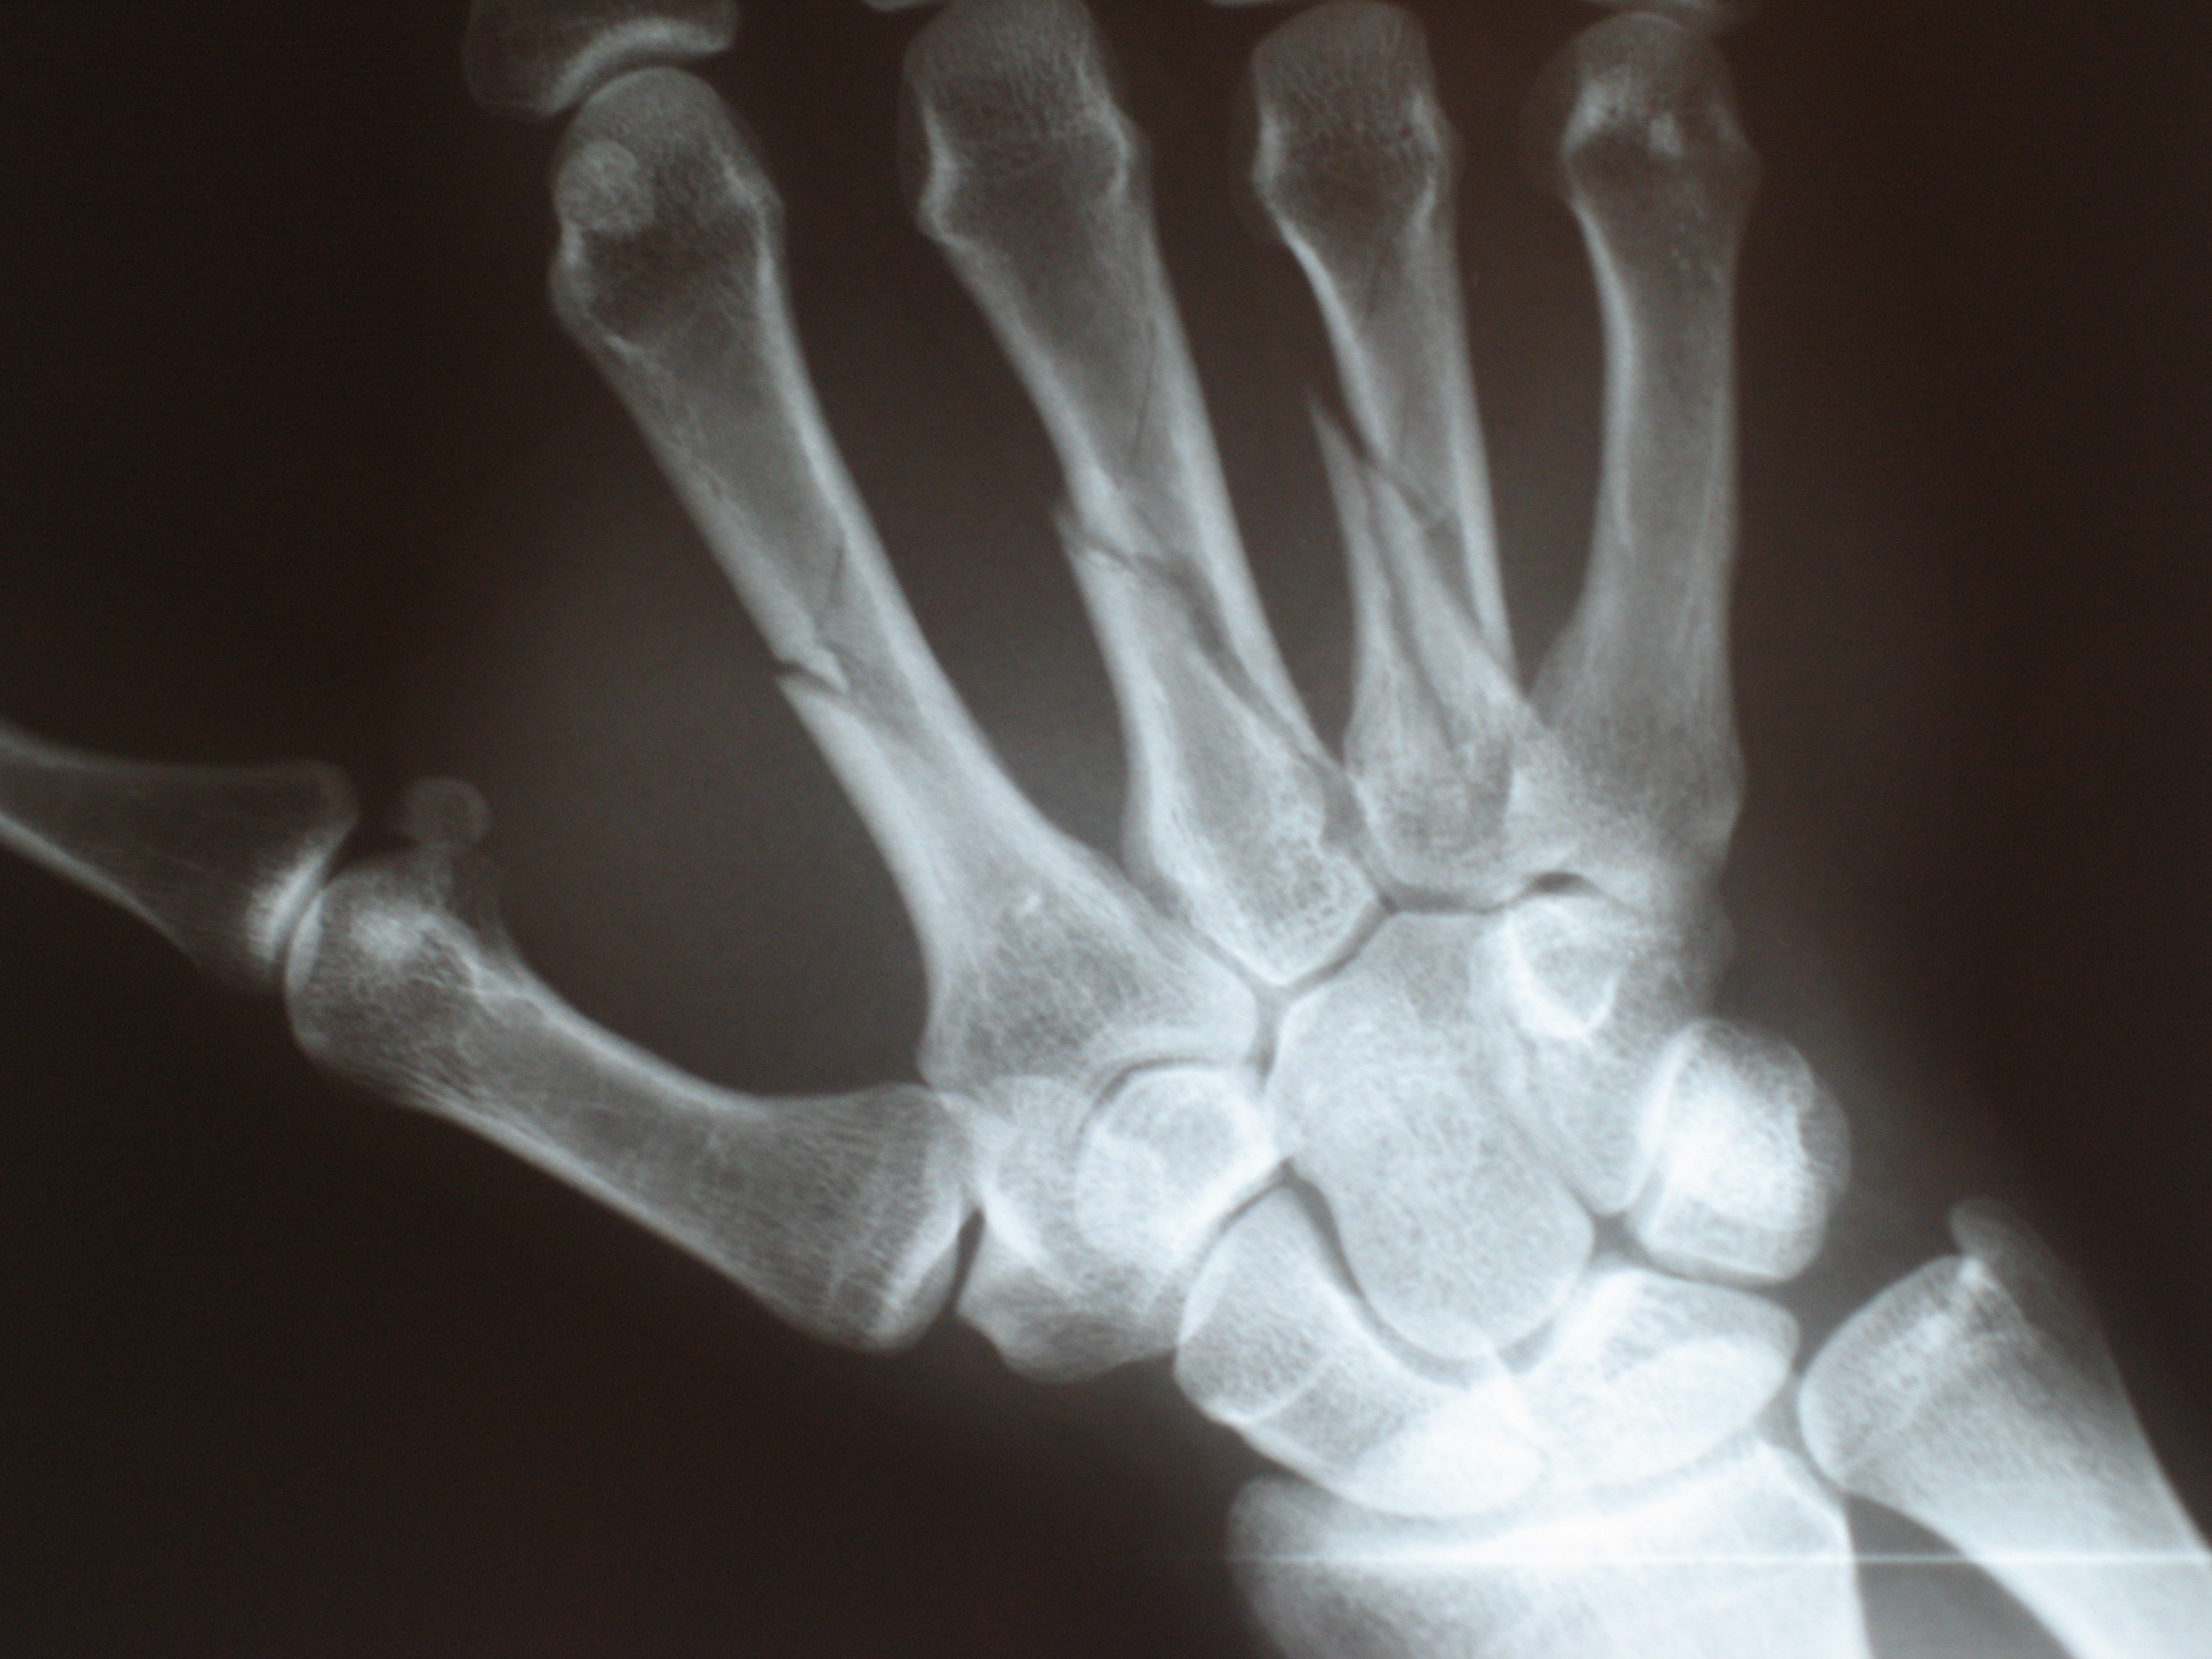 Multiple fractures of the metacarpals (aka broken hand).